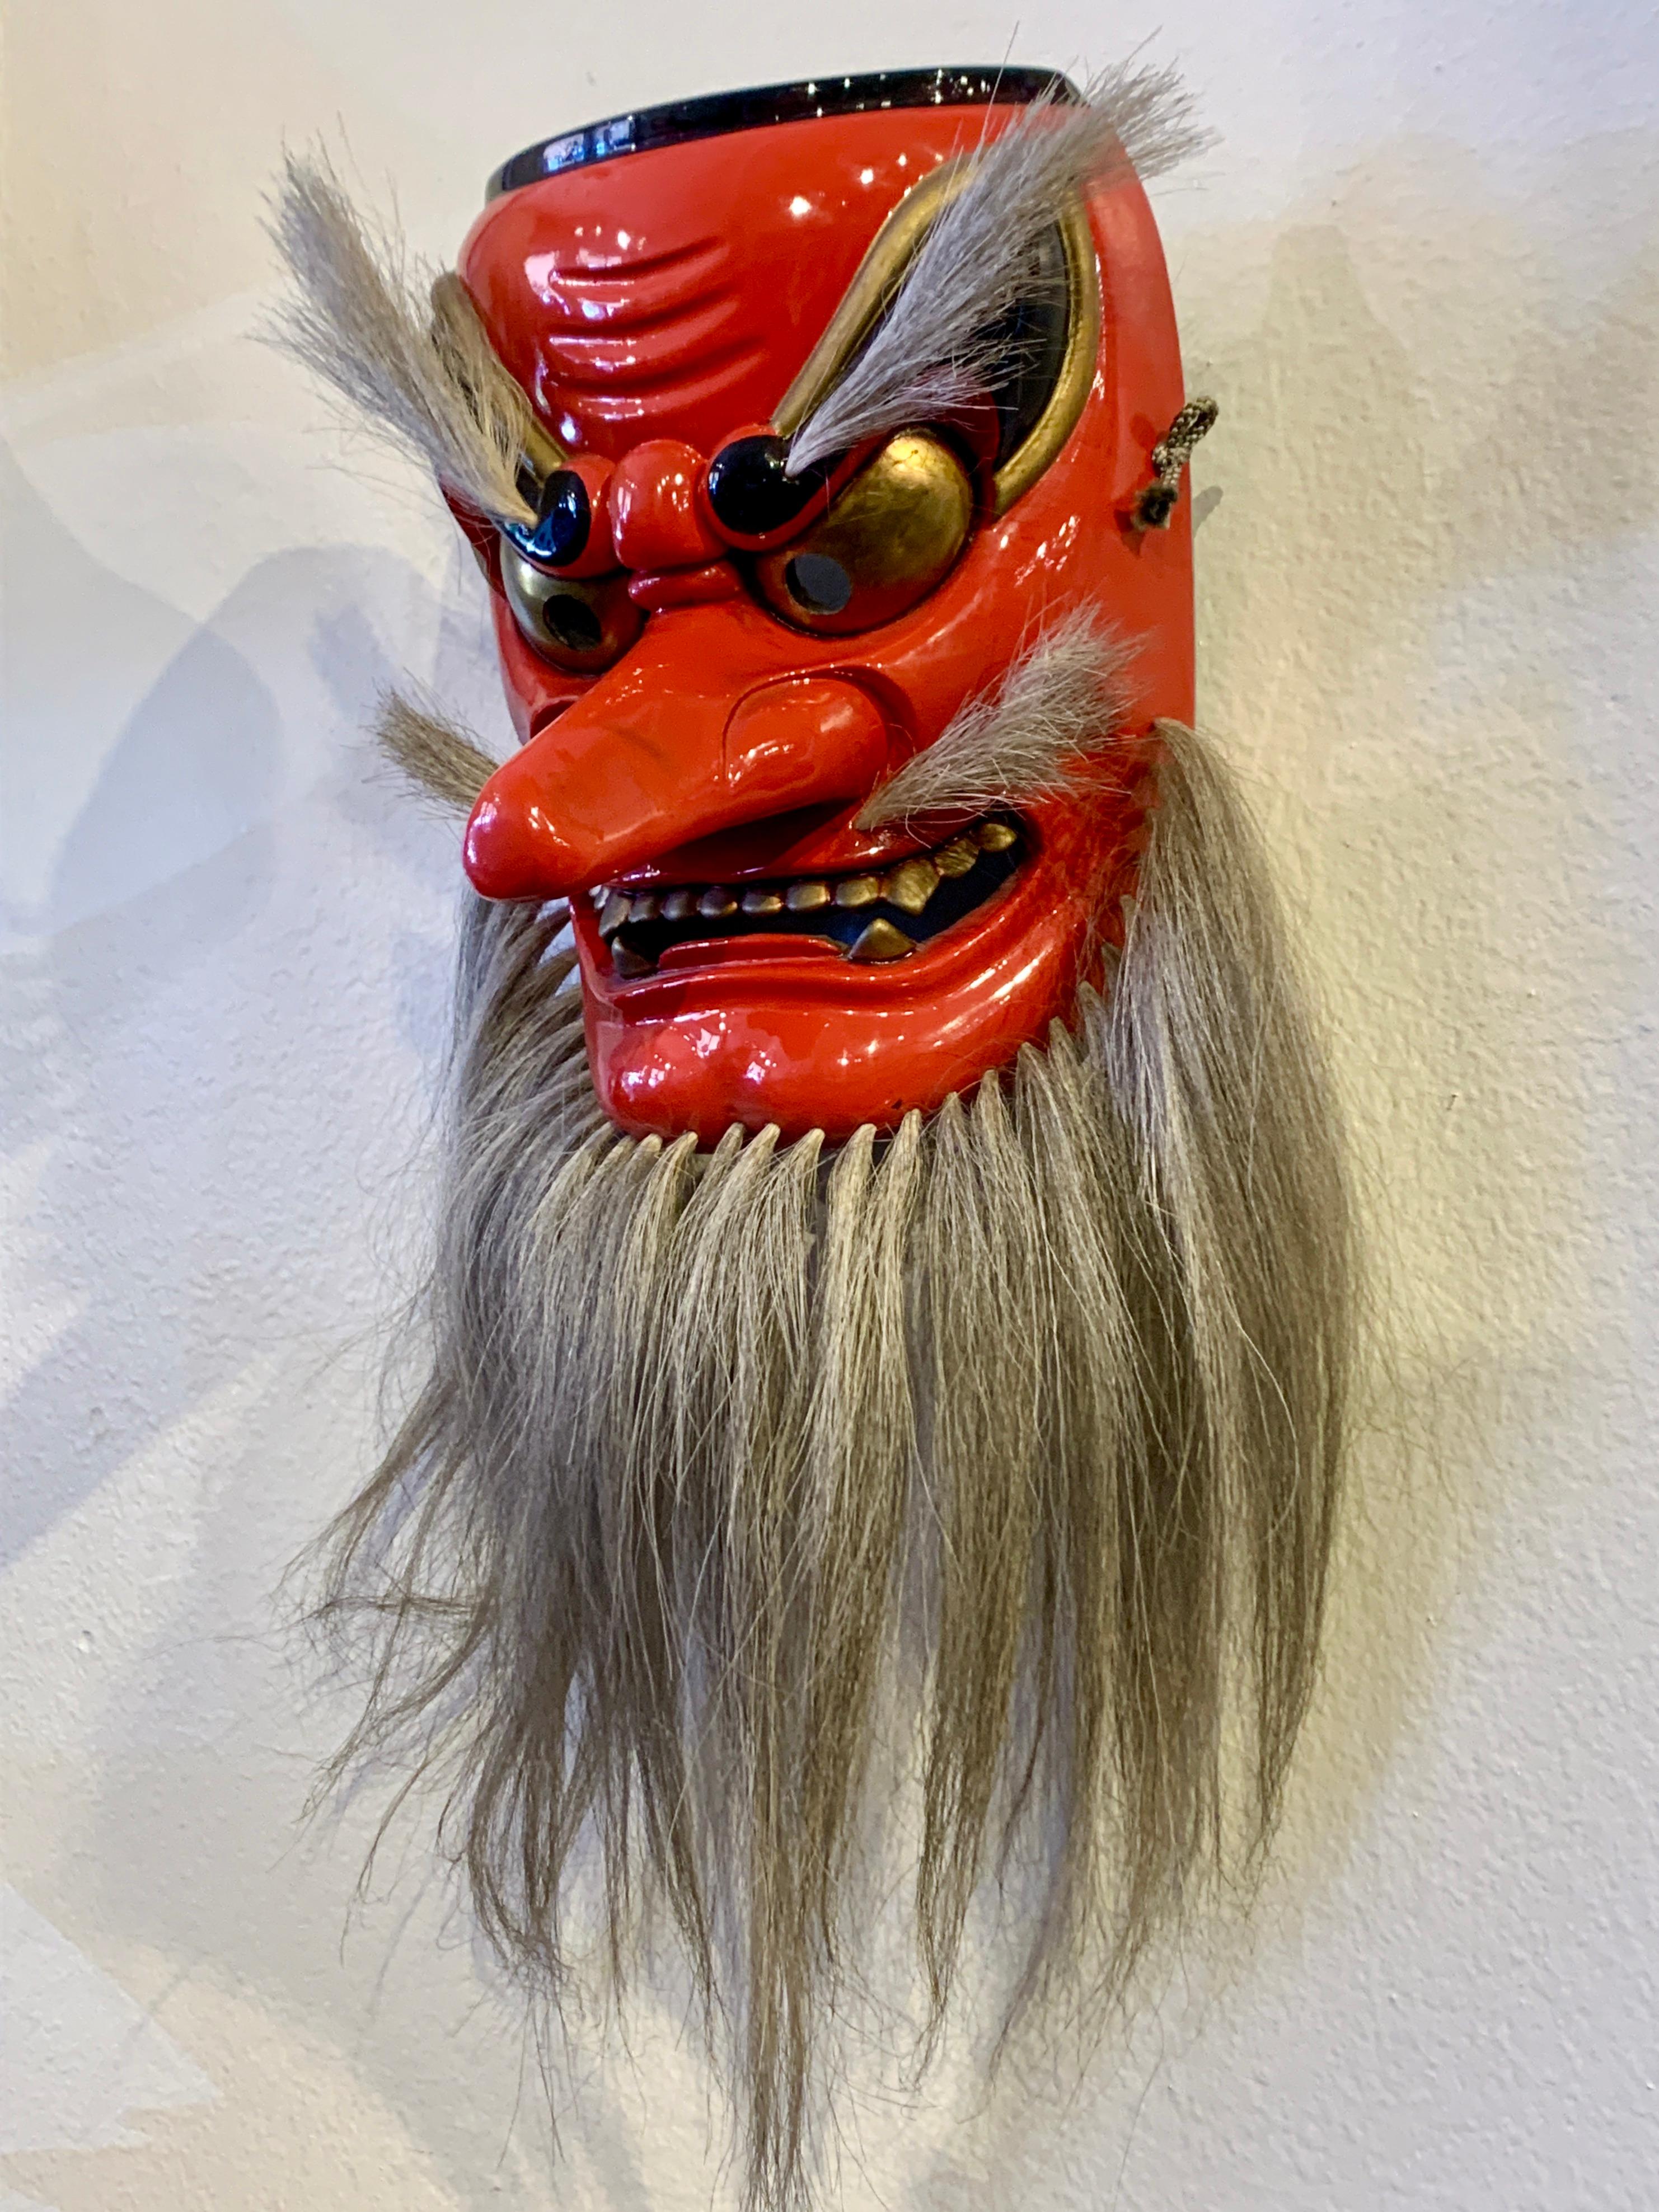 Masque kagura puissant et audacieux de la divinité shintoïste Sarutahiko Okami par Kiyomi Yokota, ère Showa ou Heisei, fin du XXe siècle, Japon.

Le masque représente la divinité japonaise Shinto Sarutahiko Okami, divinité Shinto des arts martiaux